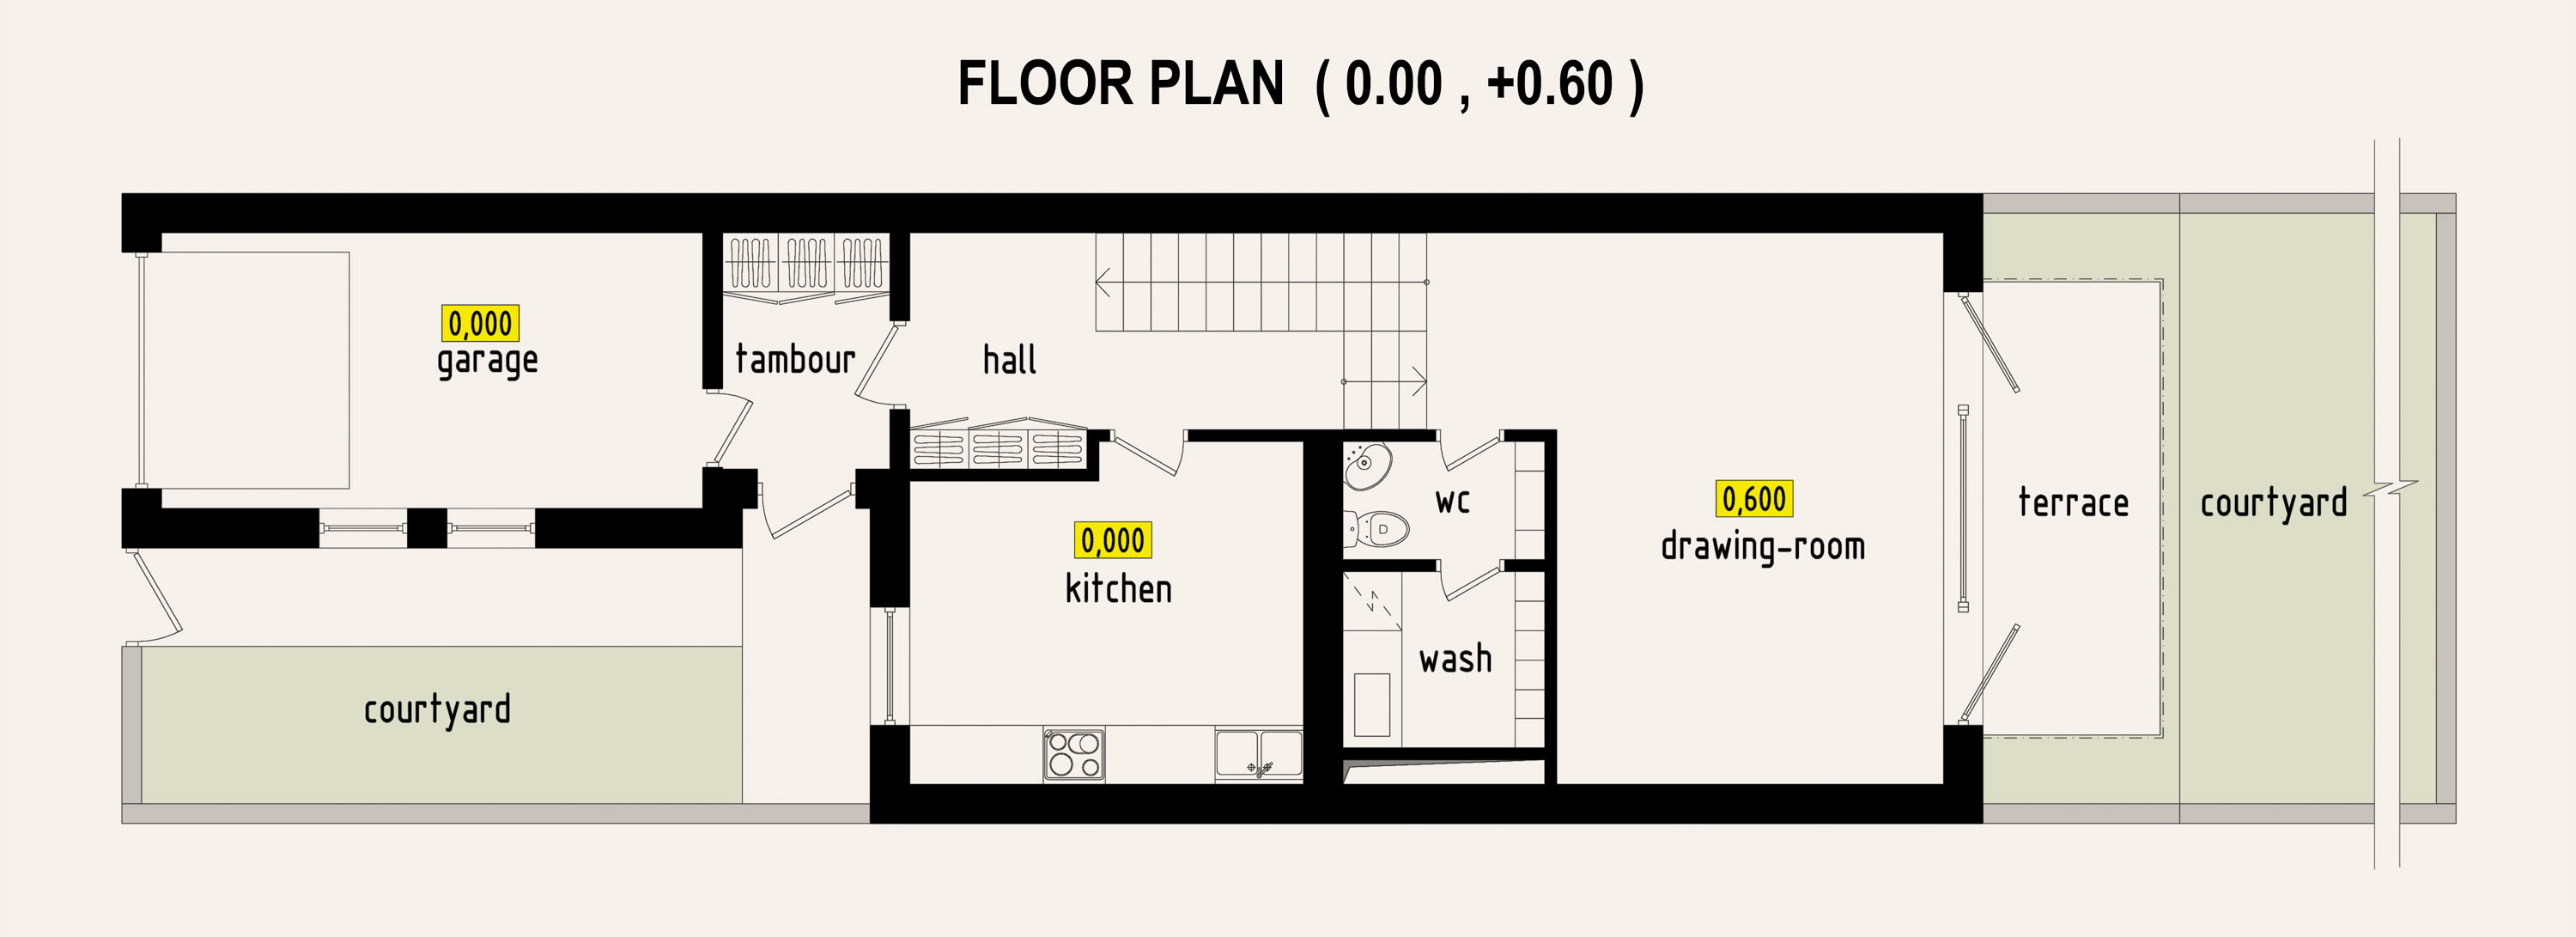 Options de conception pour les maisons en rangée. Partie I. dans 3d max corona render image